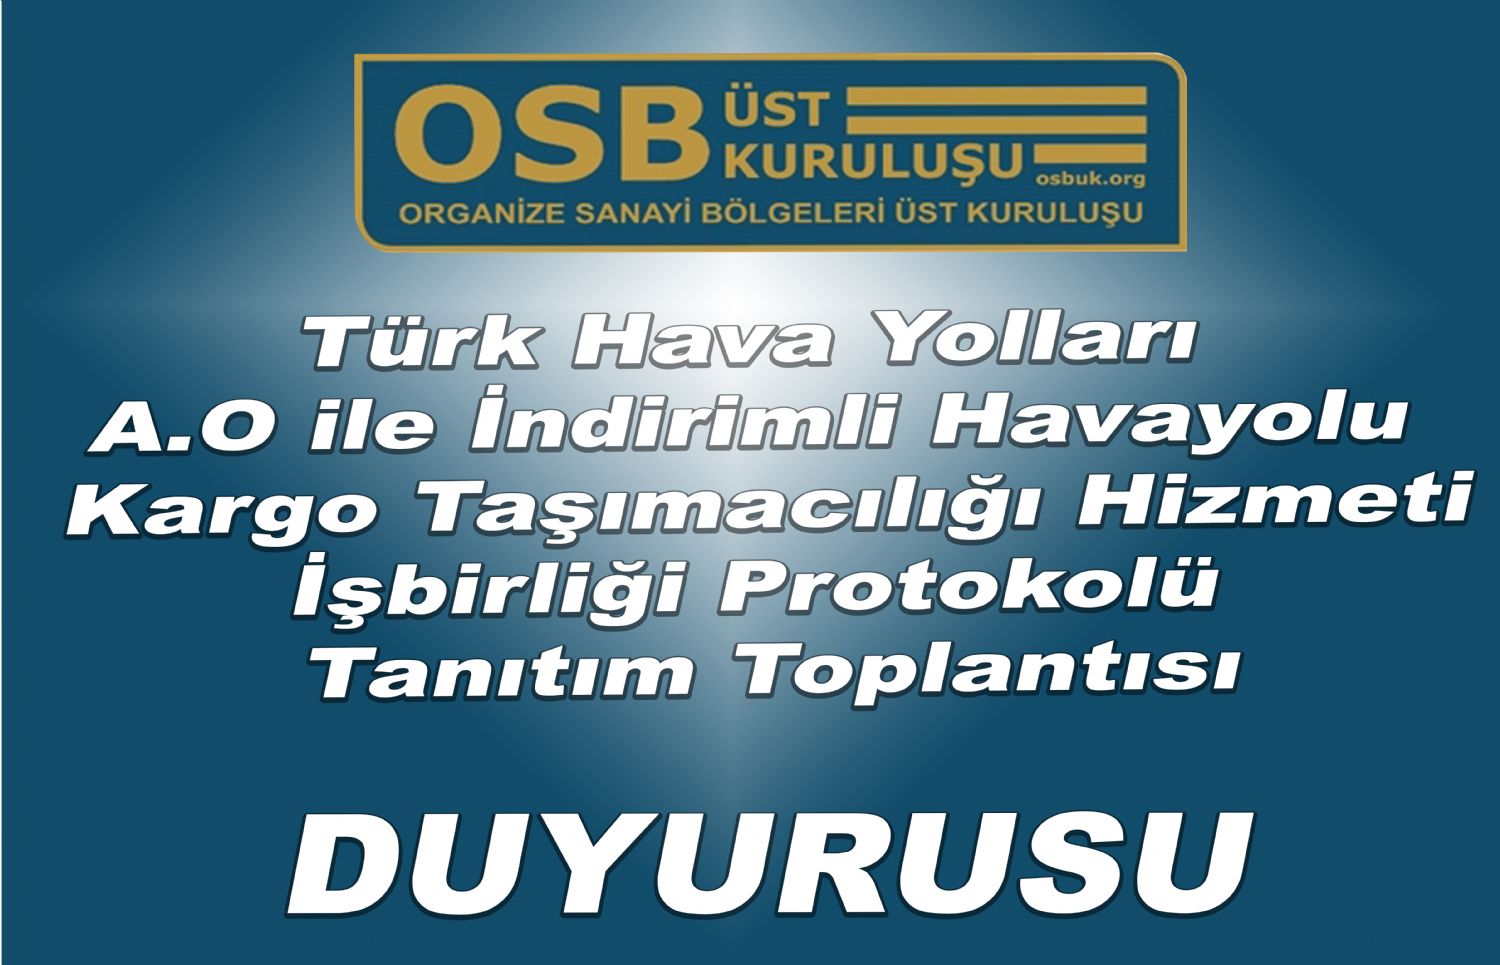 OSBÜK Türk Hava Yolları A.O ile İndirimli Havayolu Kargo Taşımacılığı Hizmeti İşbirliği Protokolü Tanıtım Toplantısı Duyurusu 